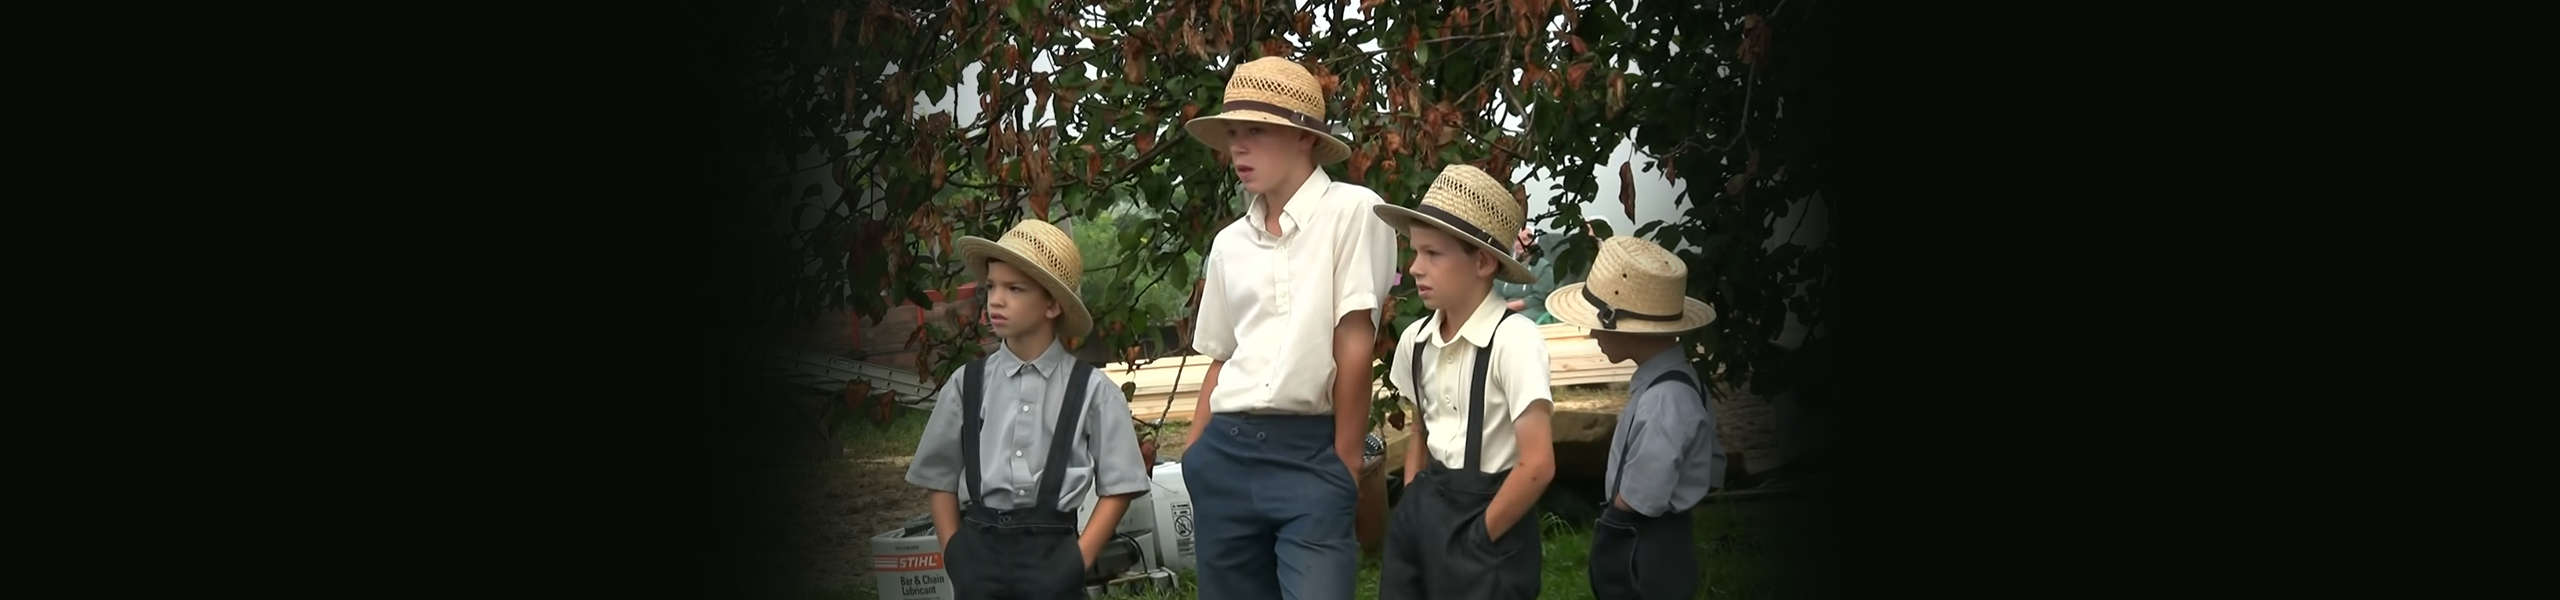 The Amish: Barn Raising Days